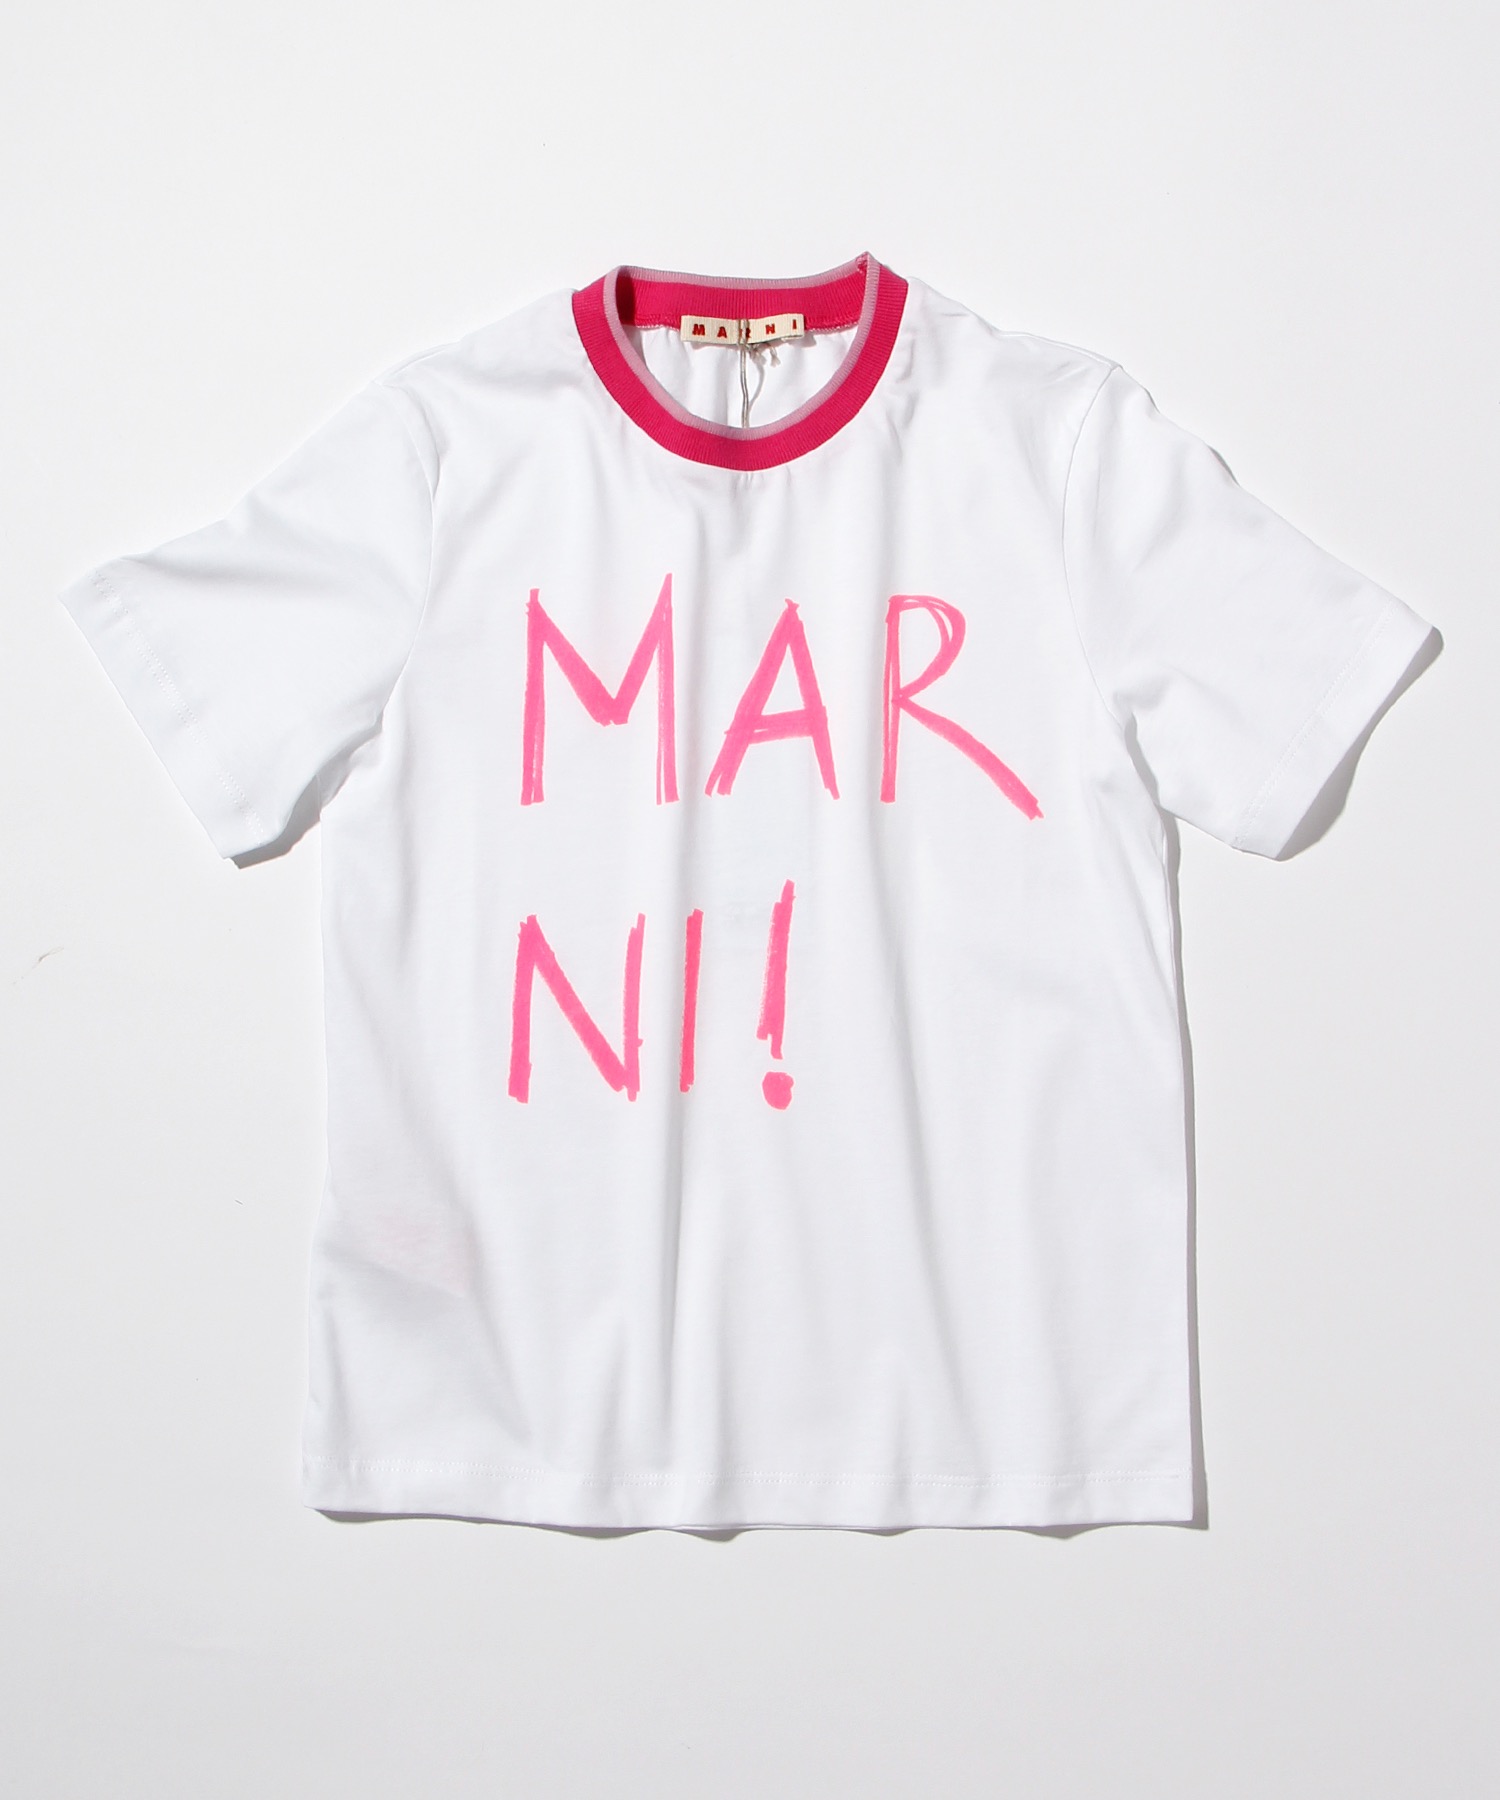 激安超特価 キュート 大人も着れる 新品ロゴTシャツ kids-nurie.com